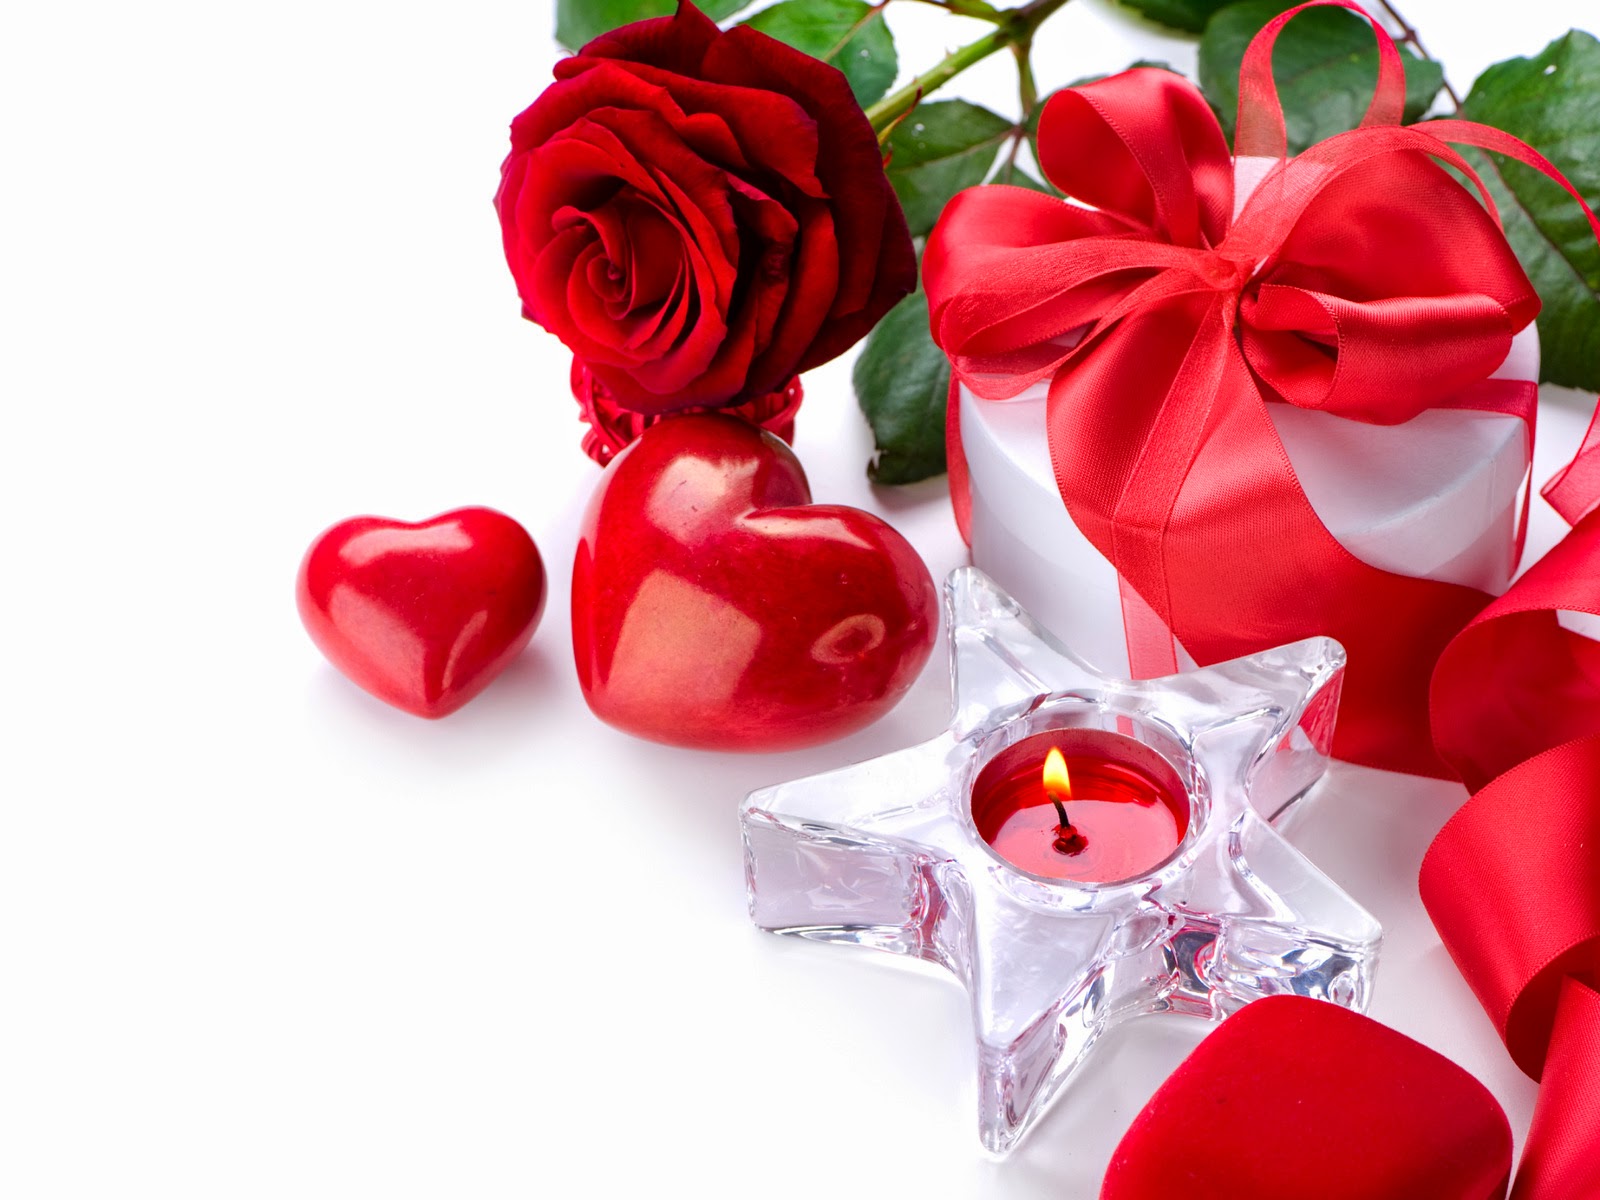 Descargar Imagenes De Rosas Y Corazones - Imagenes de amor y corazones Ociogeneral 